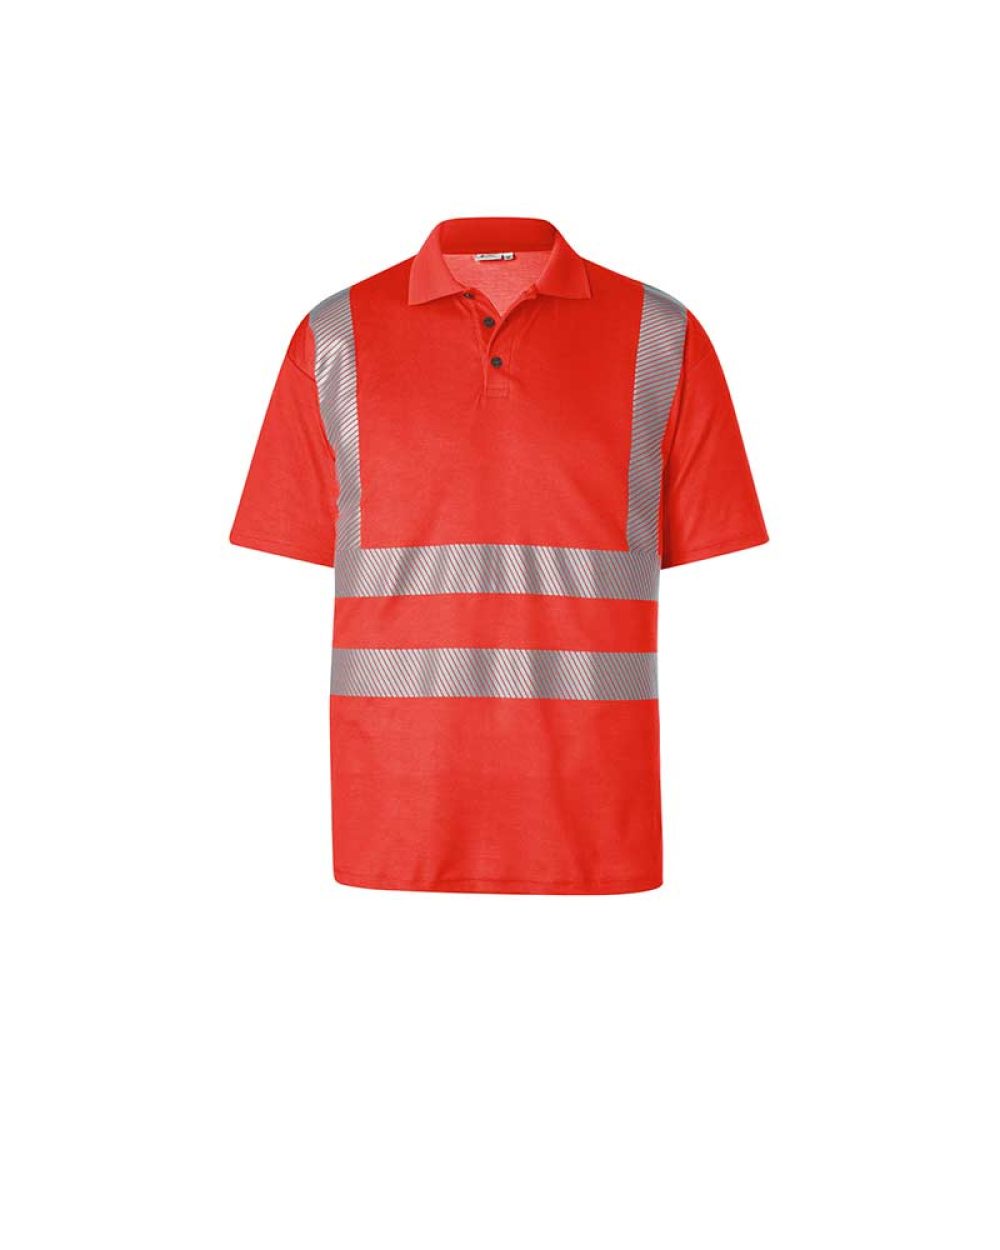 kuebler-warnschutz-poloshirt-shirts-5042-8227-54